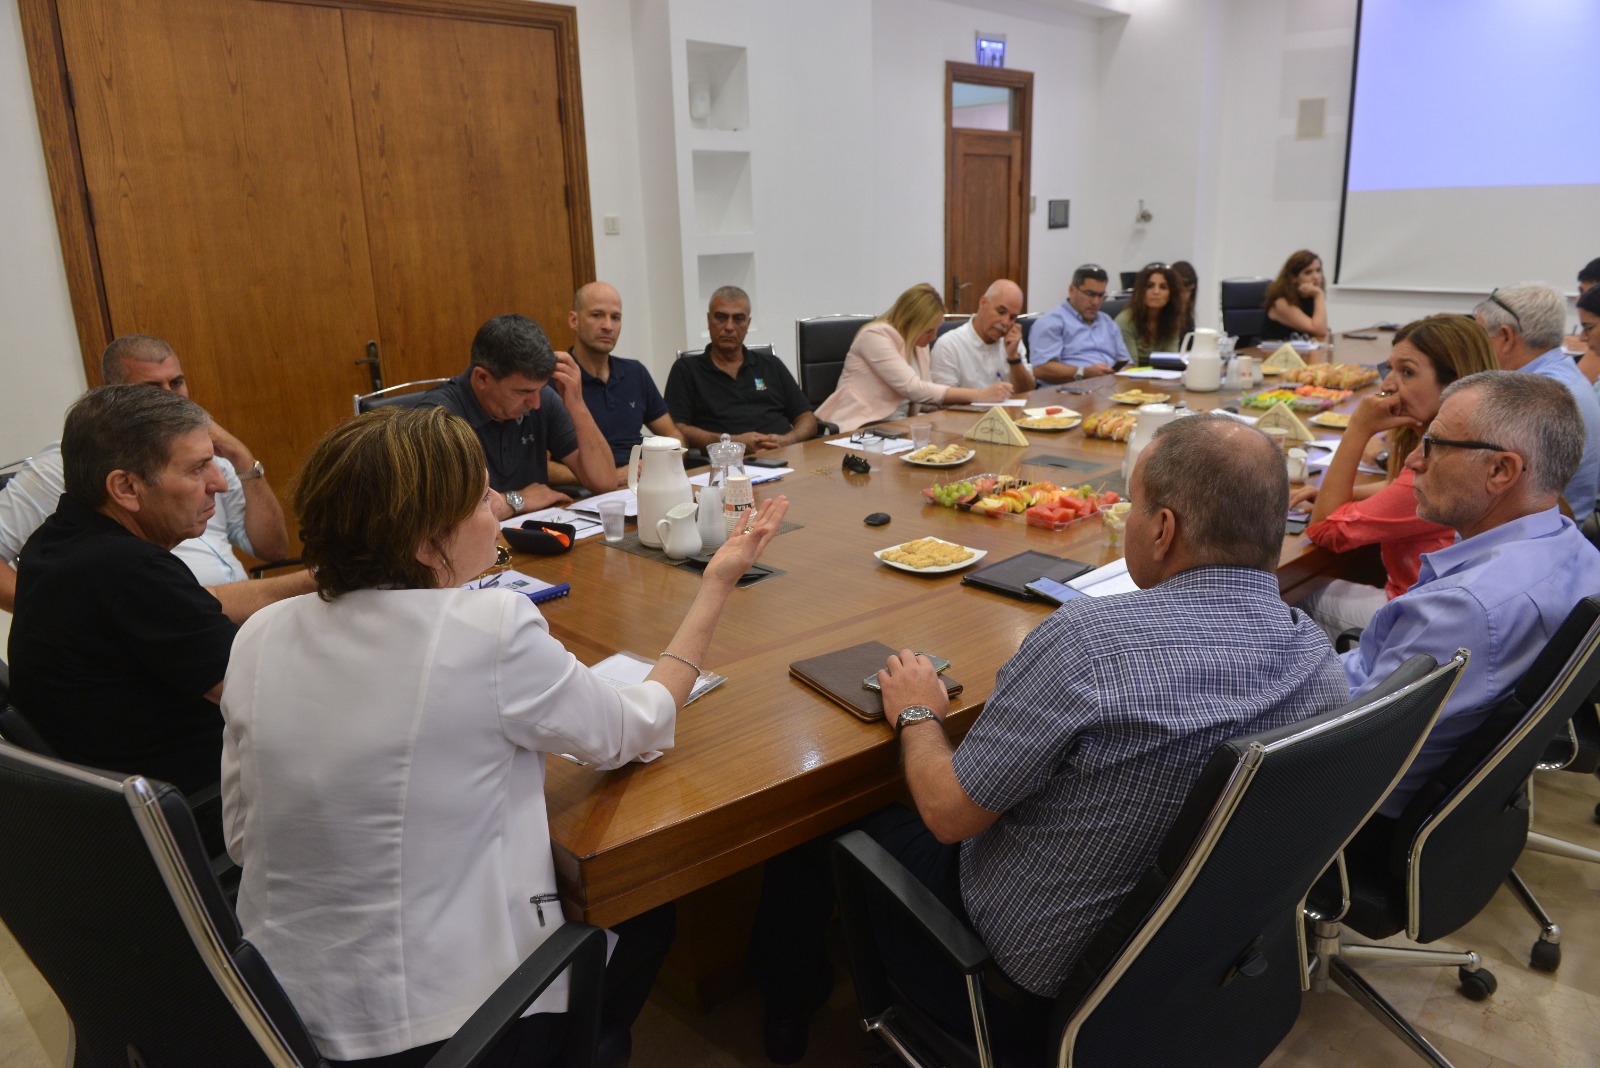 ראש עיריית חיפה ויו"ר קק"ל קיימו לראשונה דיון רב משתתפים, בסופו הכריזו על הקמת צוות שיקדם שיתופי פעולה בחיפה